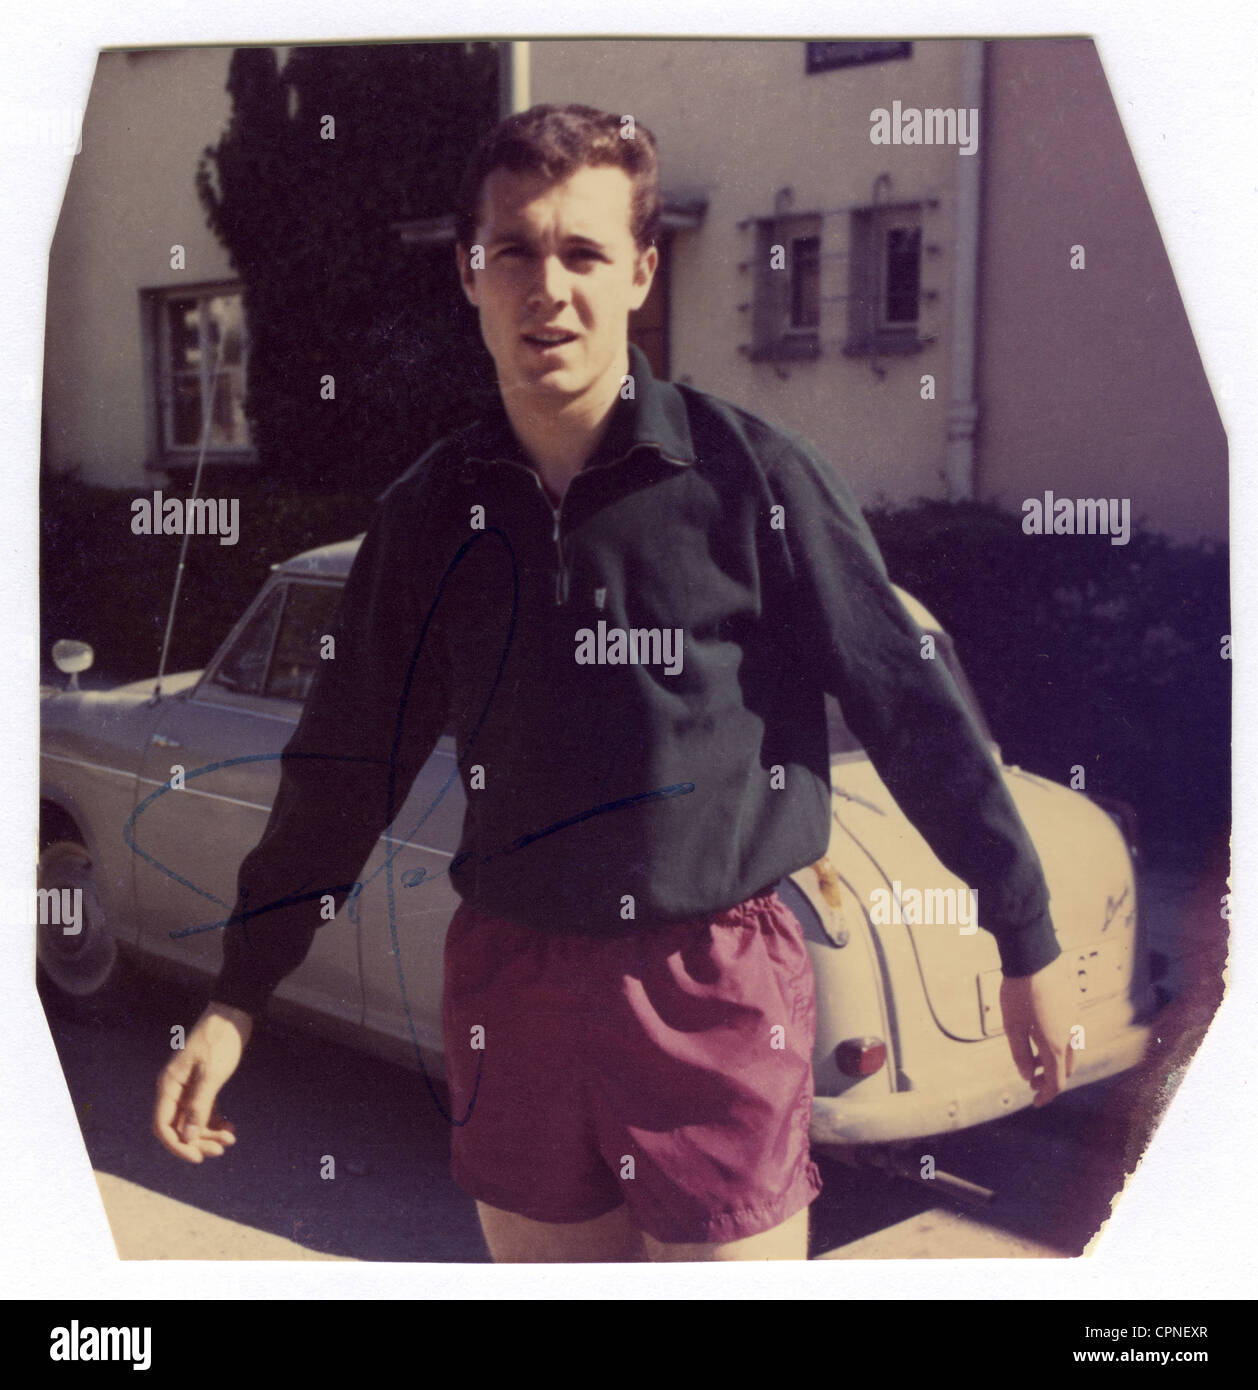 Beckenbauer, Franz, * 11.09.1945, atleta tedesco, (calciatore), mezza lunghezza, fotografia privata, come ragazzo di circa 17 anni, prima di iniziare la sua carriera professionale, su una strada di fronte ad una vettura Lloyd 600, fotografia con autografo originale, Monaco, circa 1962, Foto Stock